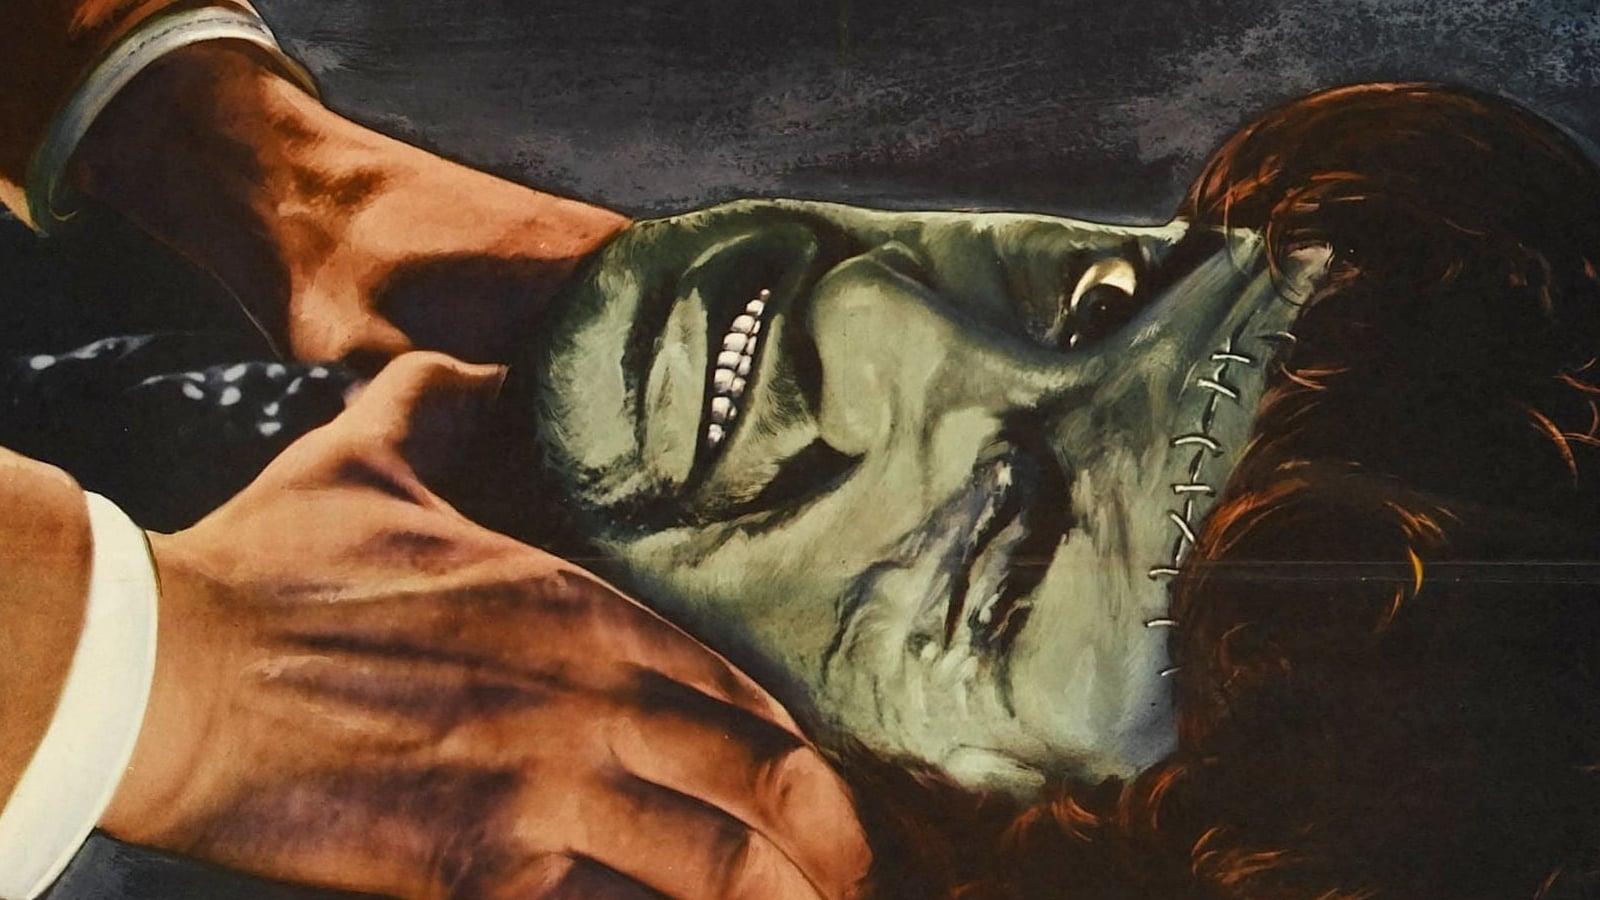 The Revenge of Frankenstein backdrop